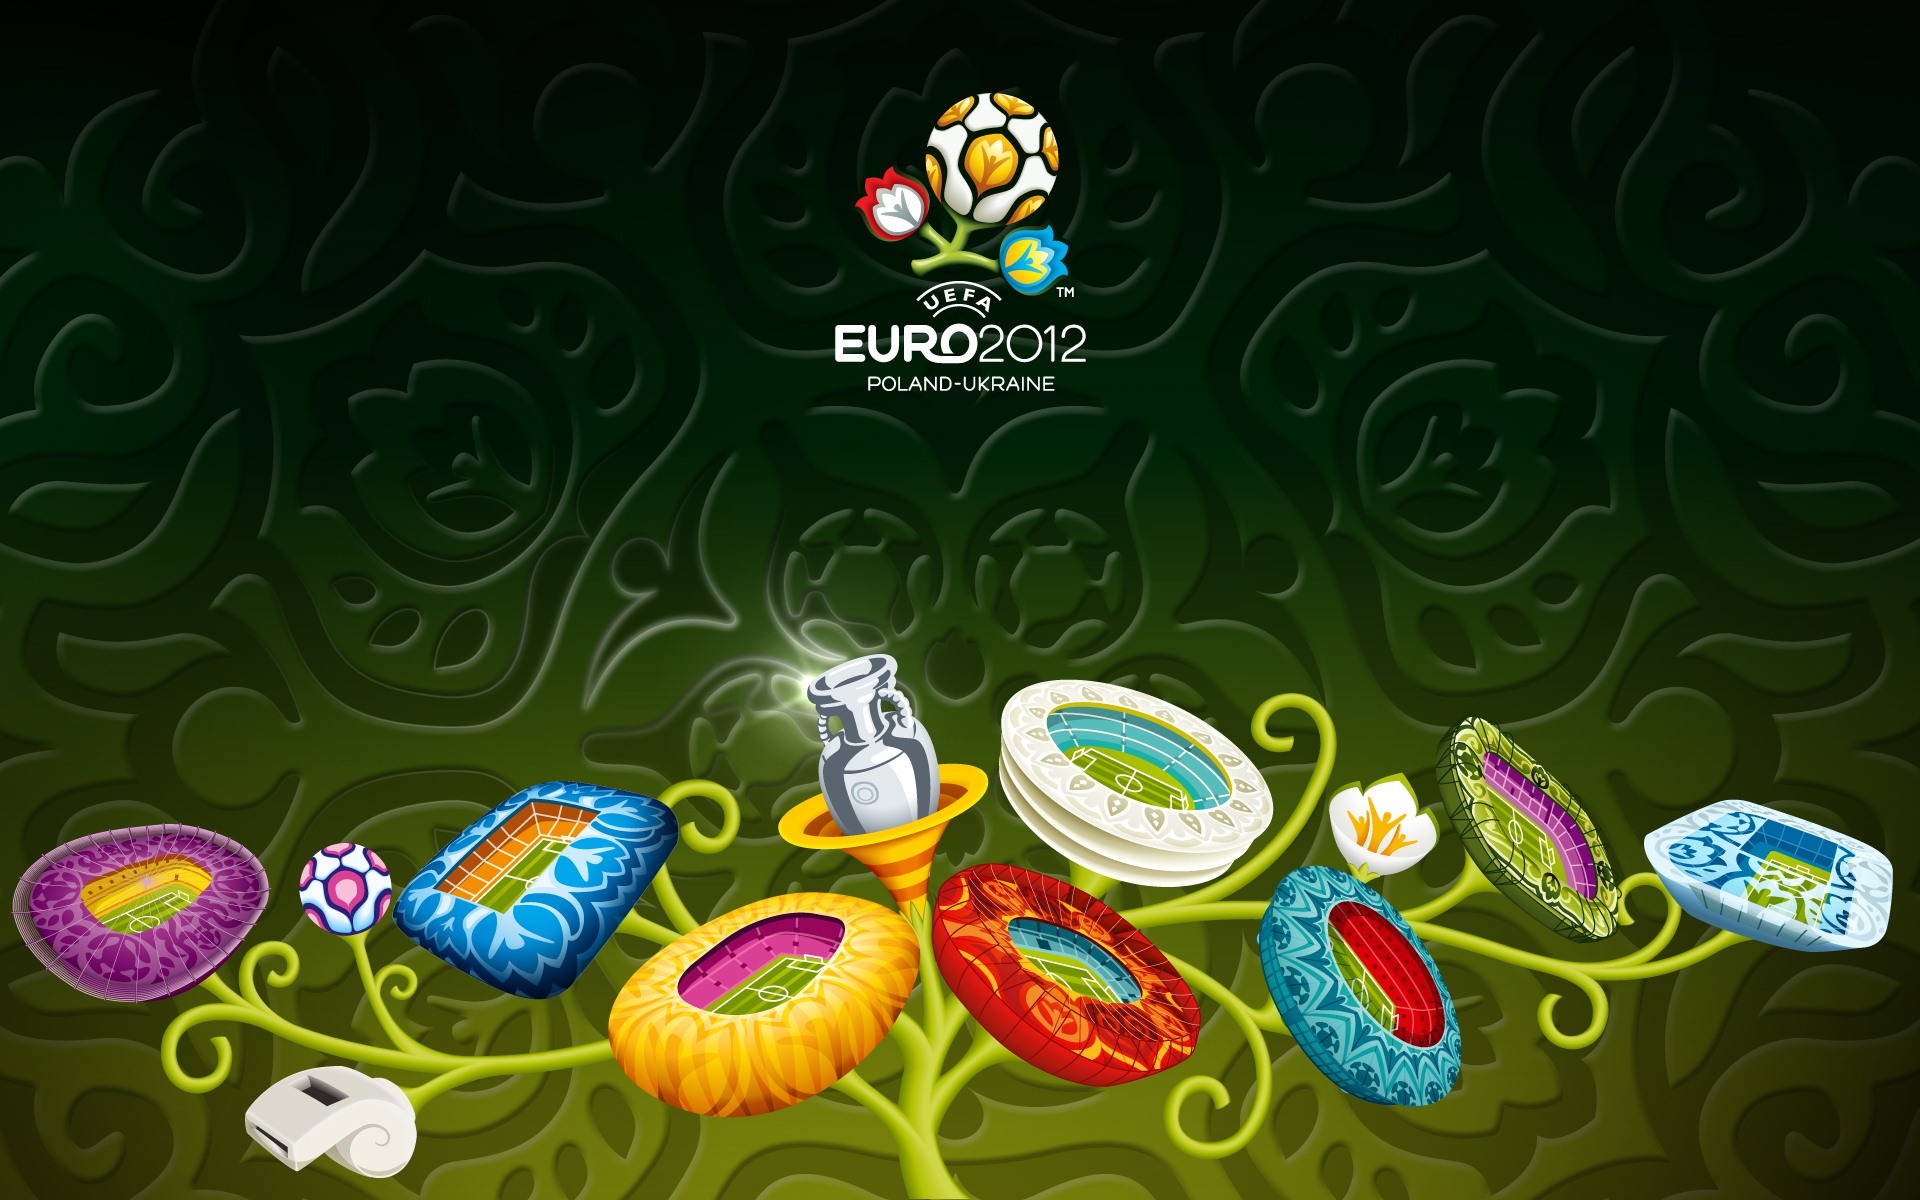 UEFA EURO 2012 欧洲足球锦标赛 高清壁纸(二)11 - 1920x1200